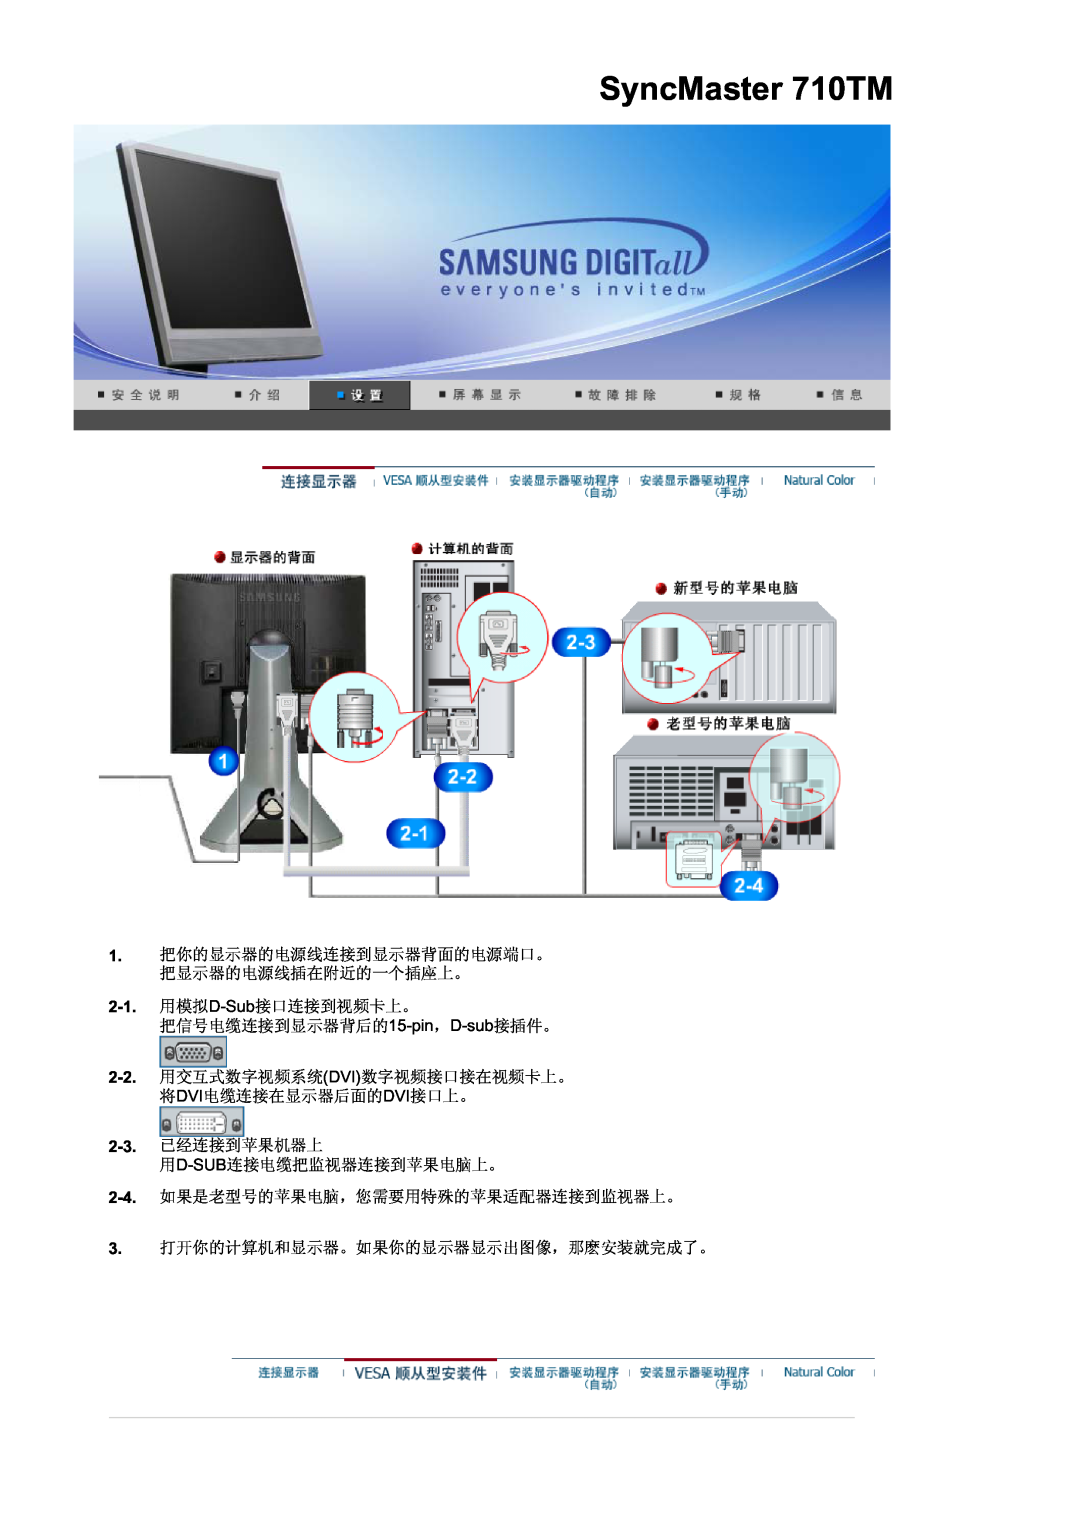 Samsung MJ17MSTSQ/EDC, LS17MJSTSE/EDC, LS19MJSTS7/EDC, MJ19MSTSQ/EDC SyncMaster 710TM, D-Sub, pin D-sub, 2-2.DVI, Dvidvi 